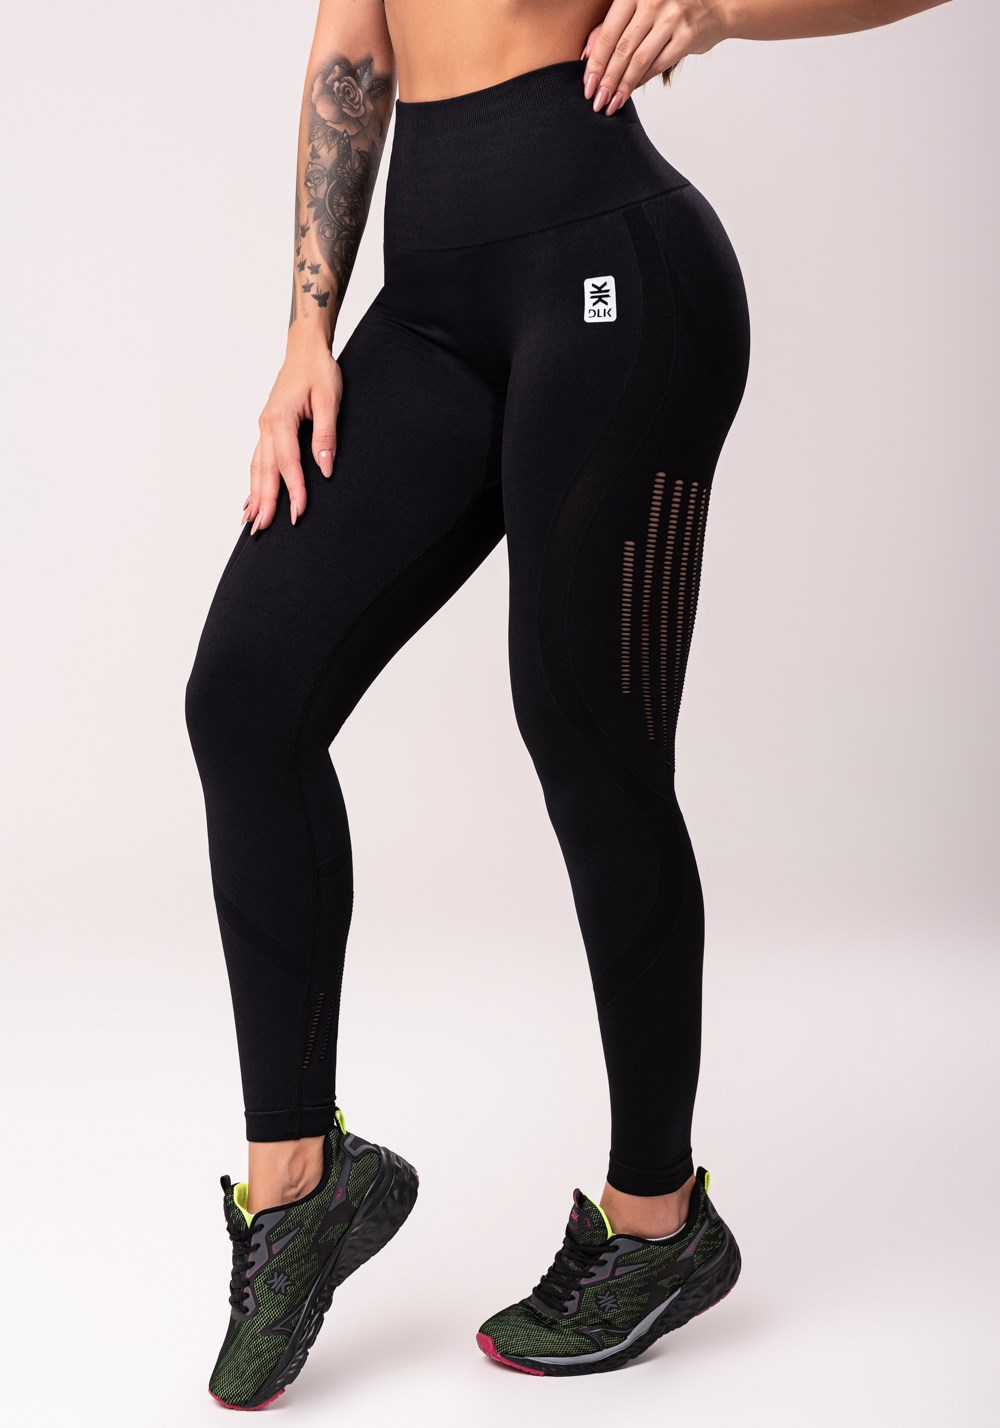 Legging fitness feminina preto com recorte modelador seamless